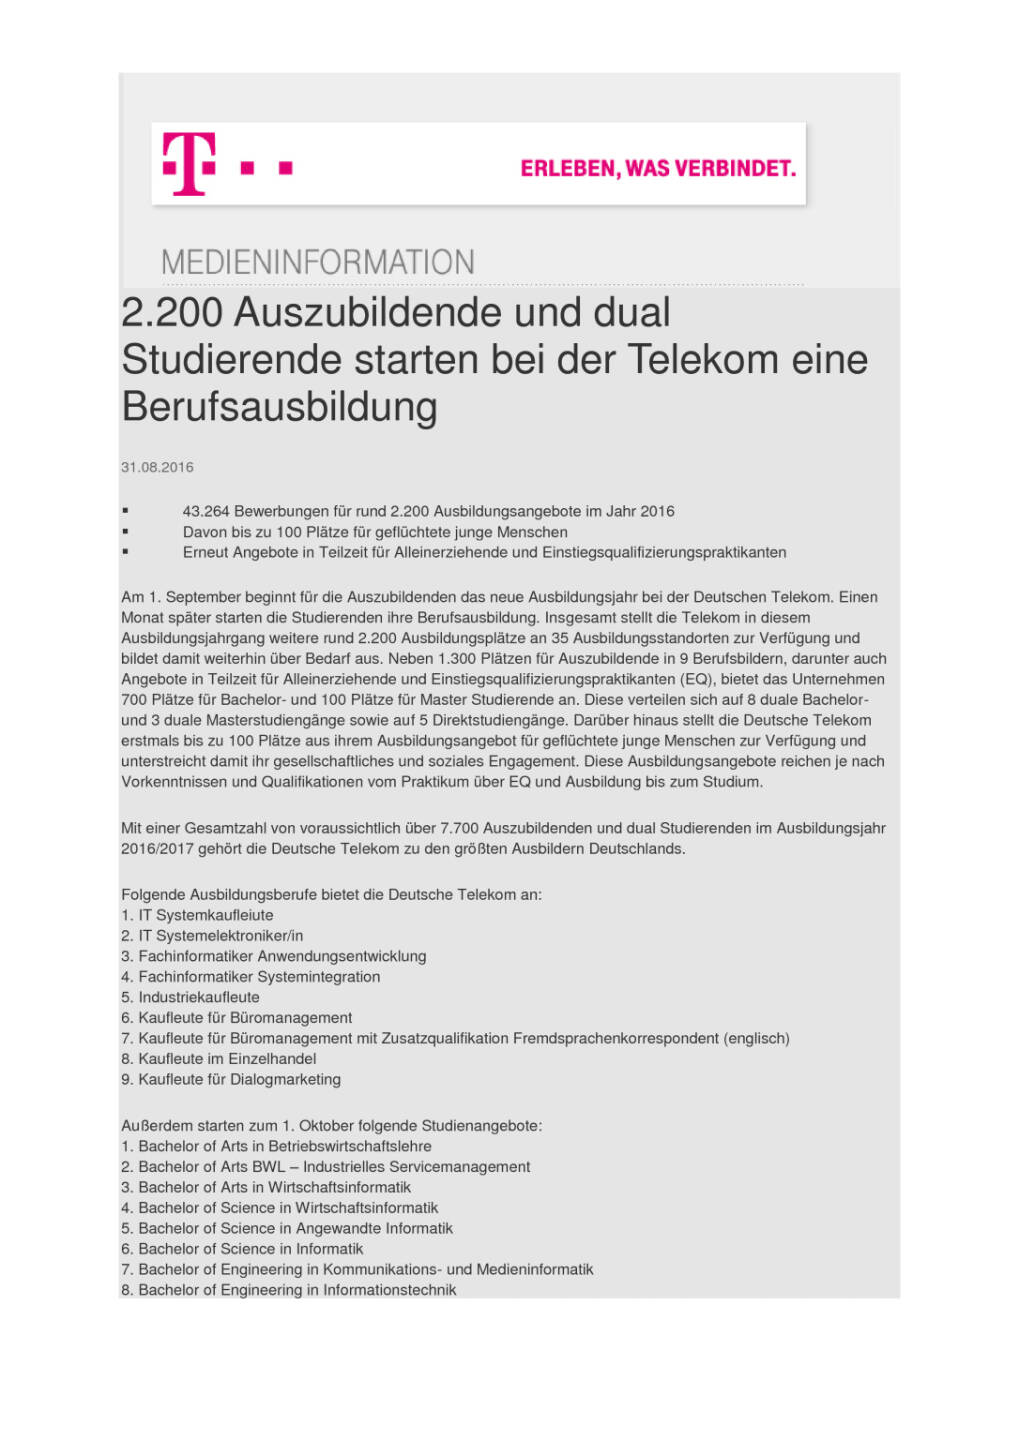 Deutsche Telekom: 2.200 Auszubildende und dual Studierende starten eine Berufsausbildung, Seite 1/2, komplettes Dokument unter http://boerse-social.com/static/uploads/file_1699_deutsche_telekom_2200_auszubildende_und_dual_studierende_starten_eine_berufsausbildung.pdf